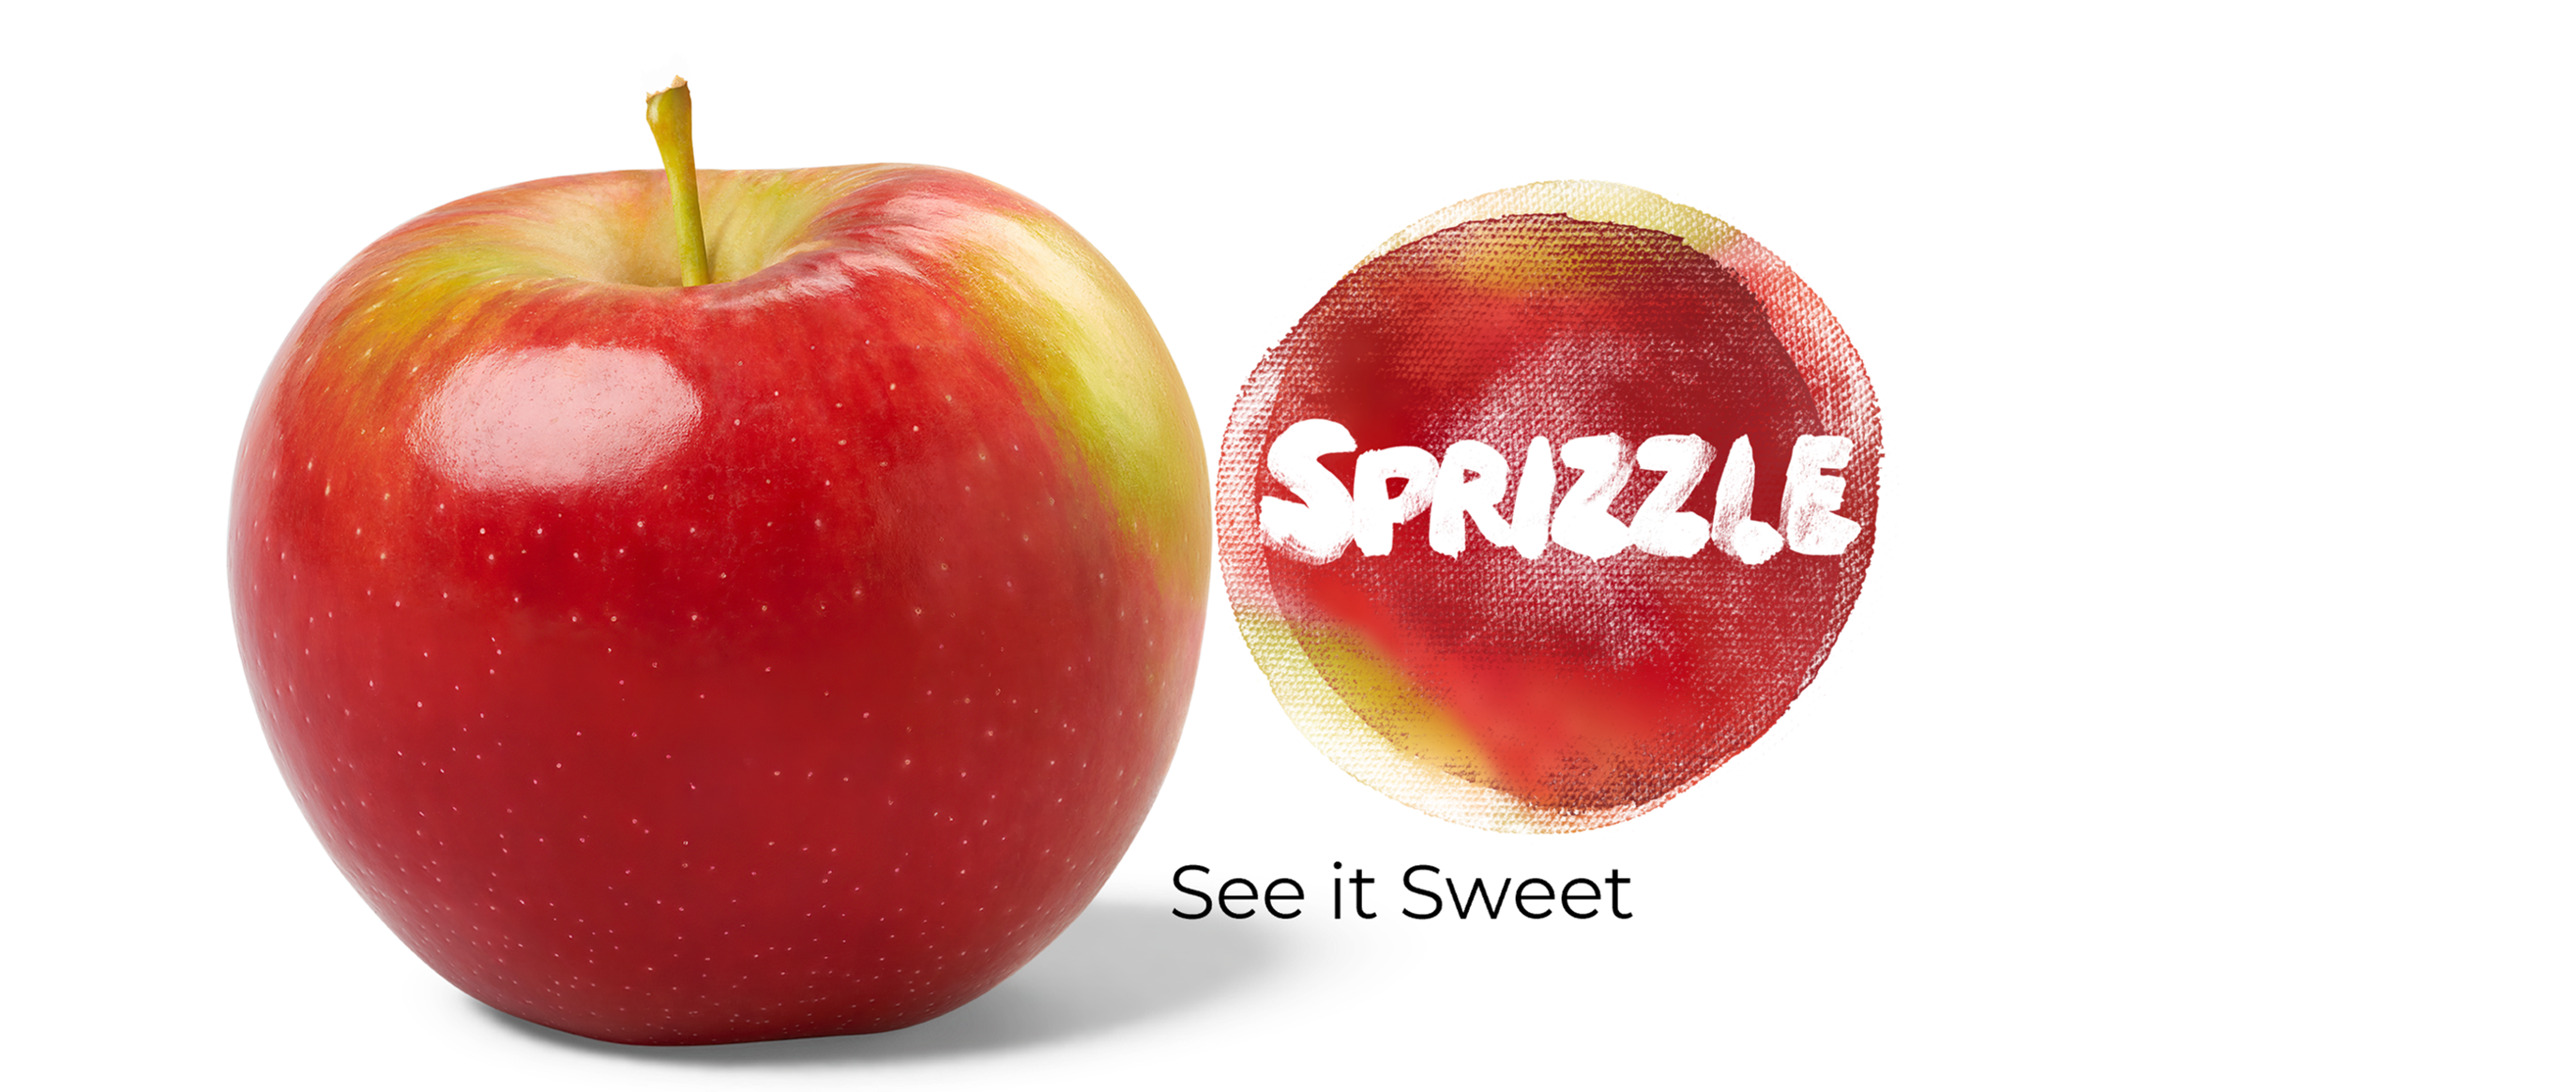 Neues Markenkonzept "Sprizzle®" vorgestellt: Der optimistische Apfel, der das Geschmackserlebnis neu definiert